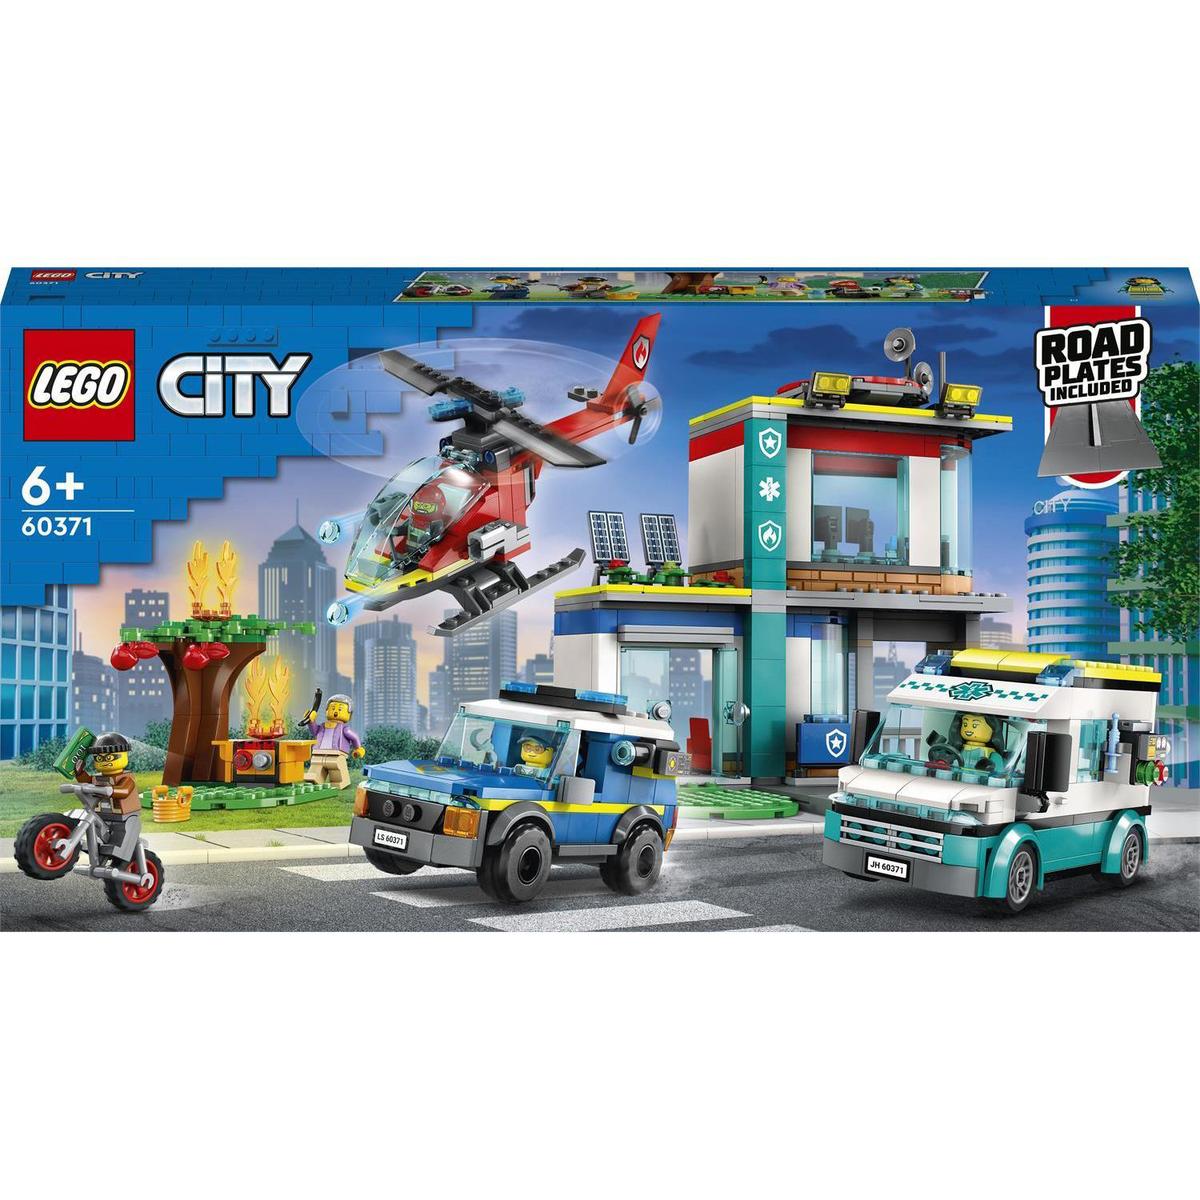 LEGO 60343 Le transport par hélicoptère de sauvetage - Dès 5 ans